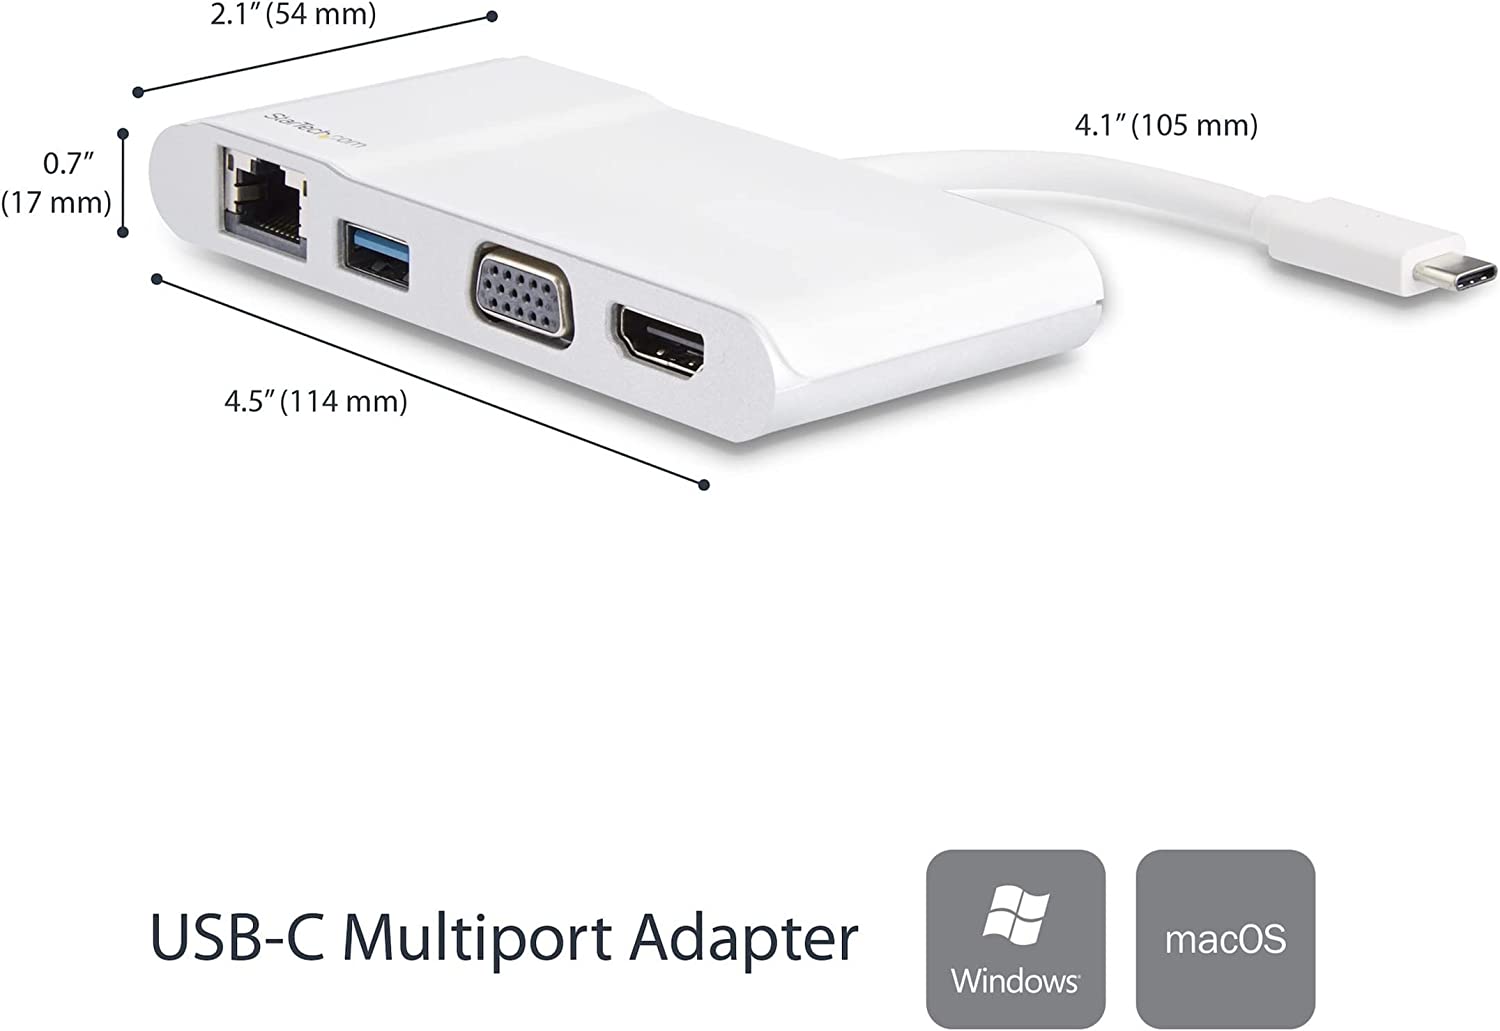 StarTech.com USB-C Multiport Adapter - Travel Dock with 4K HDMI or 1080p VGA - Gigabit Ethernet, 5Gbps USB-A 3.0 - Digital AV Adapter - USB Type-C/Thunderbolt 3 Laptops - White (DKT30CHVW)